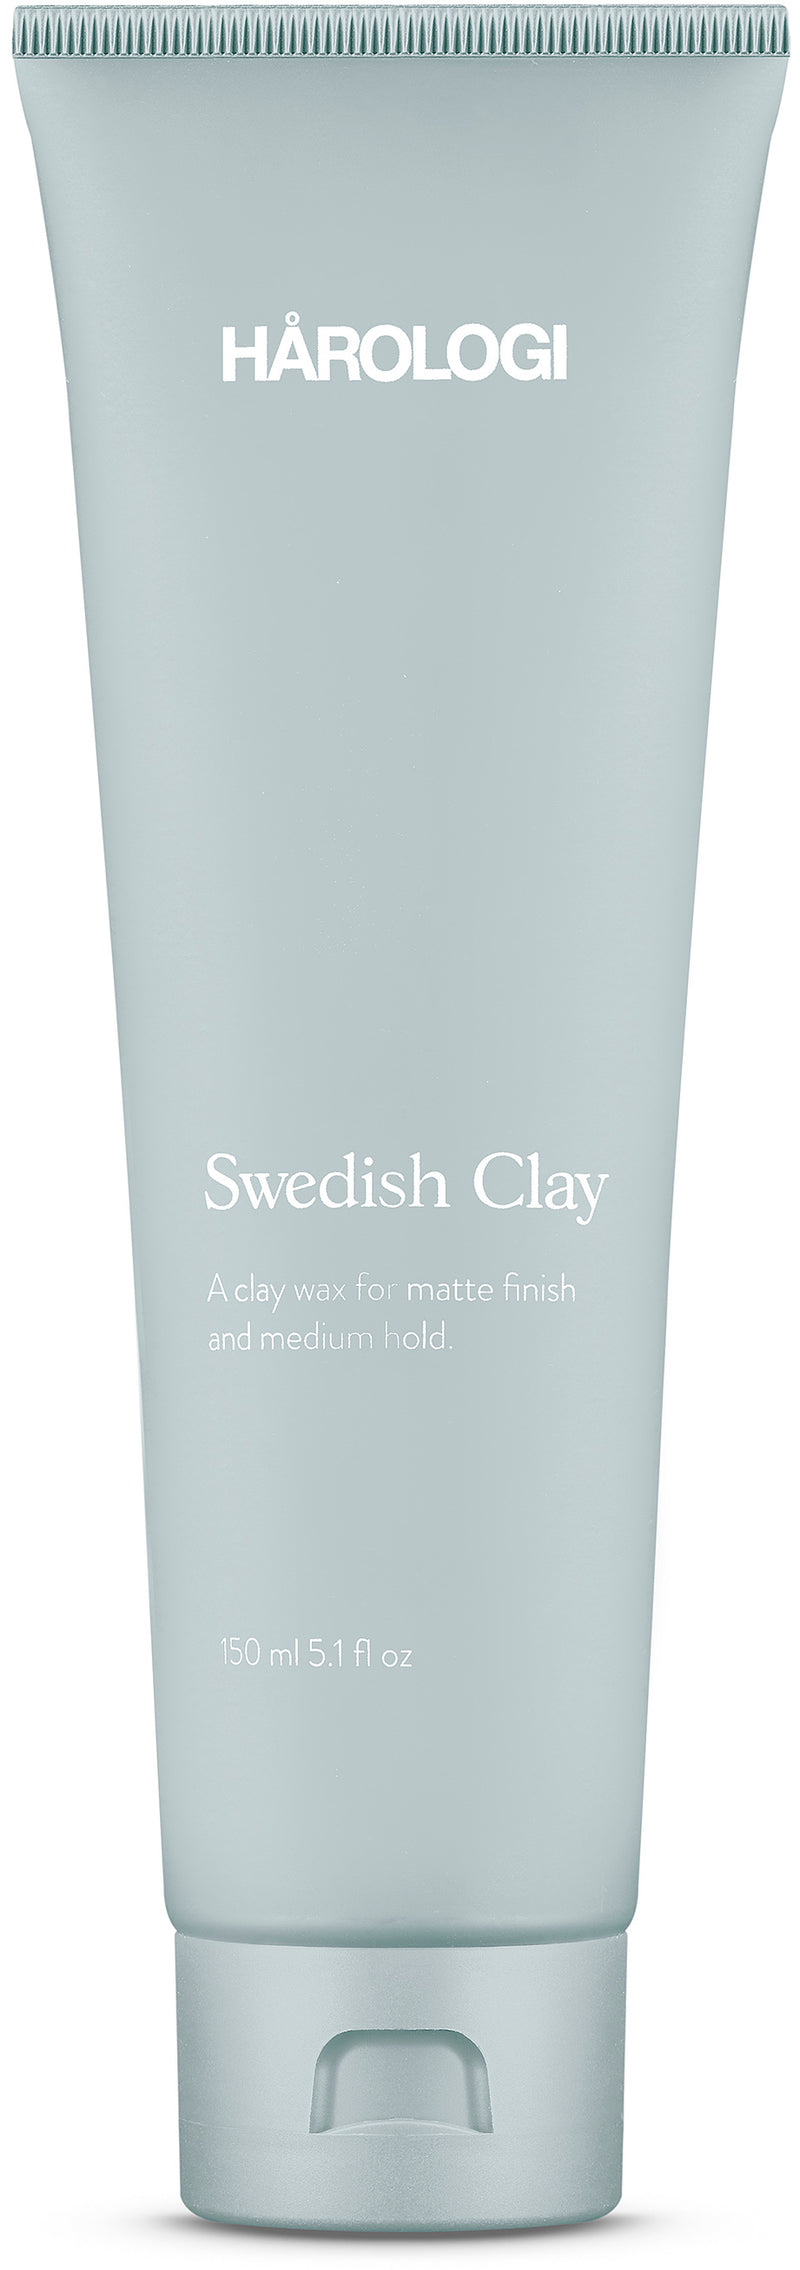 Hårologi Swedish Clay 100ML